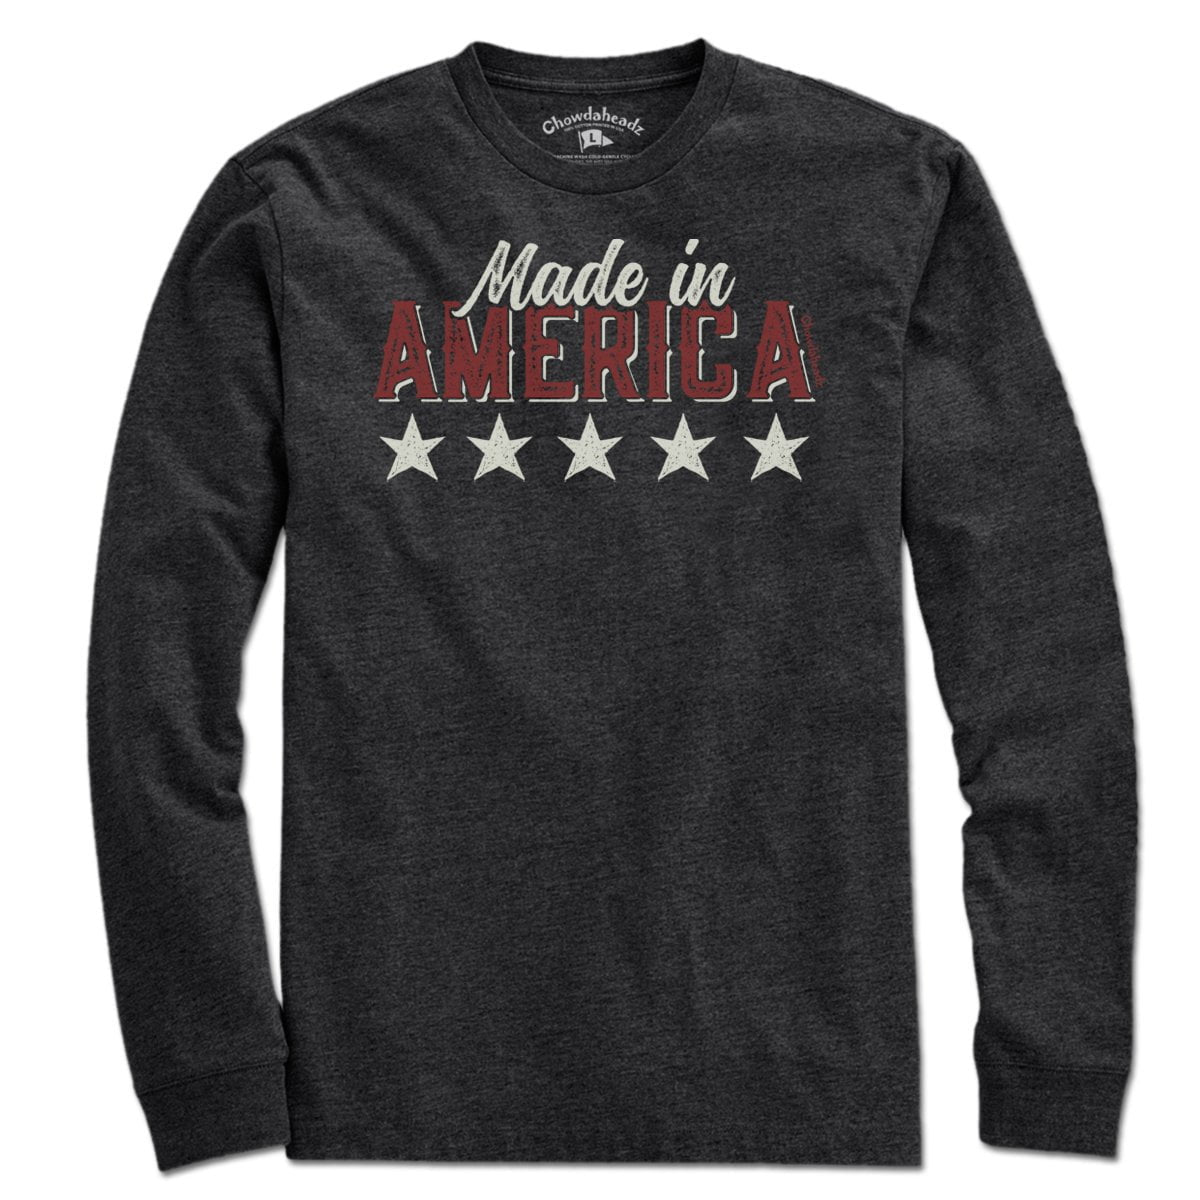 Made In America T-Shirt - Chowdaheadz